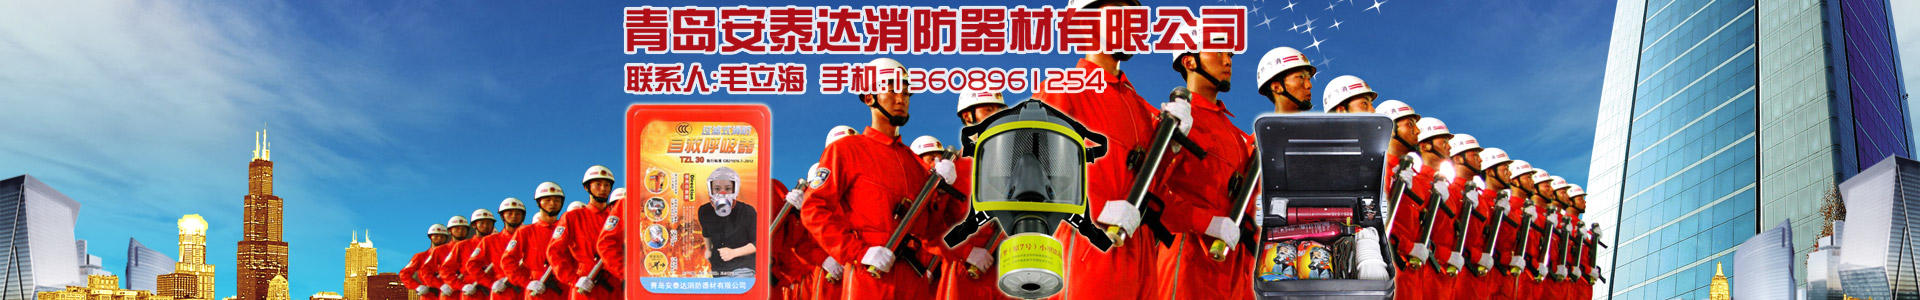 公司简介-青岛安泰达消防器材有限公司-